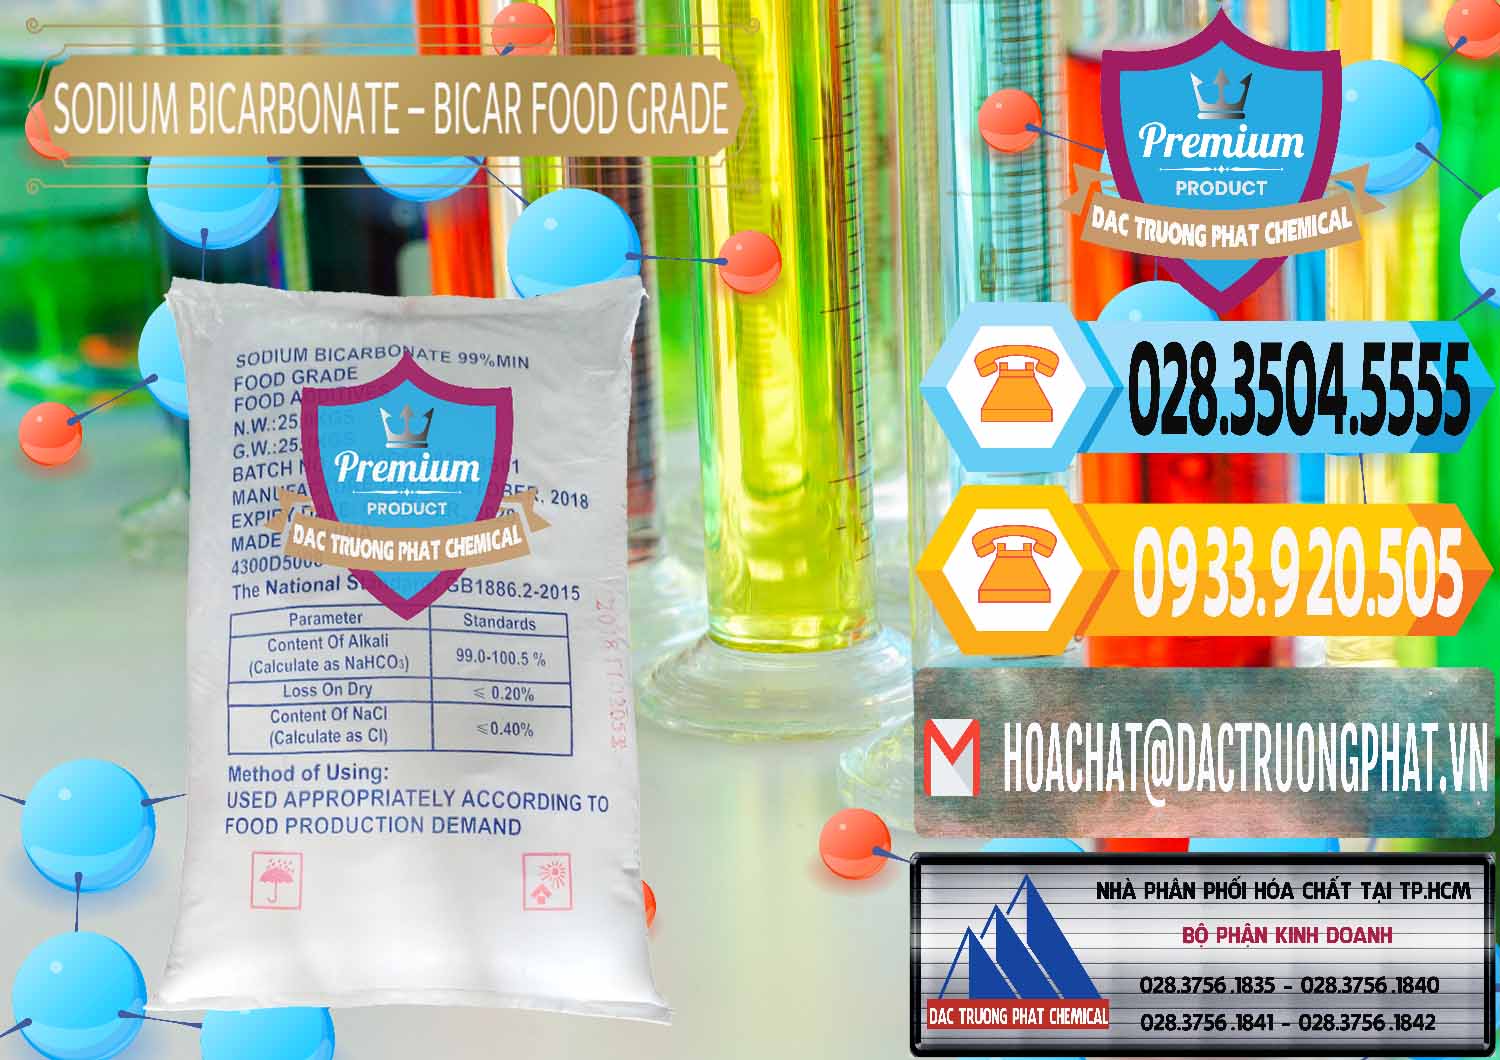 Cty bán _ phân phối Sodium Bicarbonate – Bicar NaHCO3 Food Grade Trung Quốc China - 0138 - Chuyên cung cấp - kinh doanh hóa chất tại TP.HCM - hoachattayrua.net